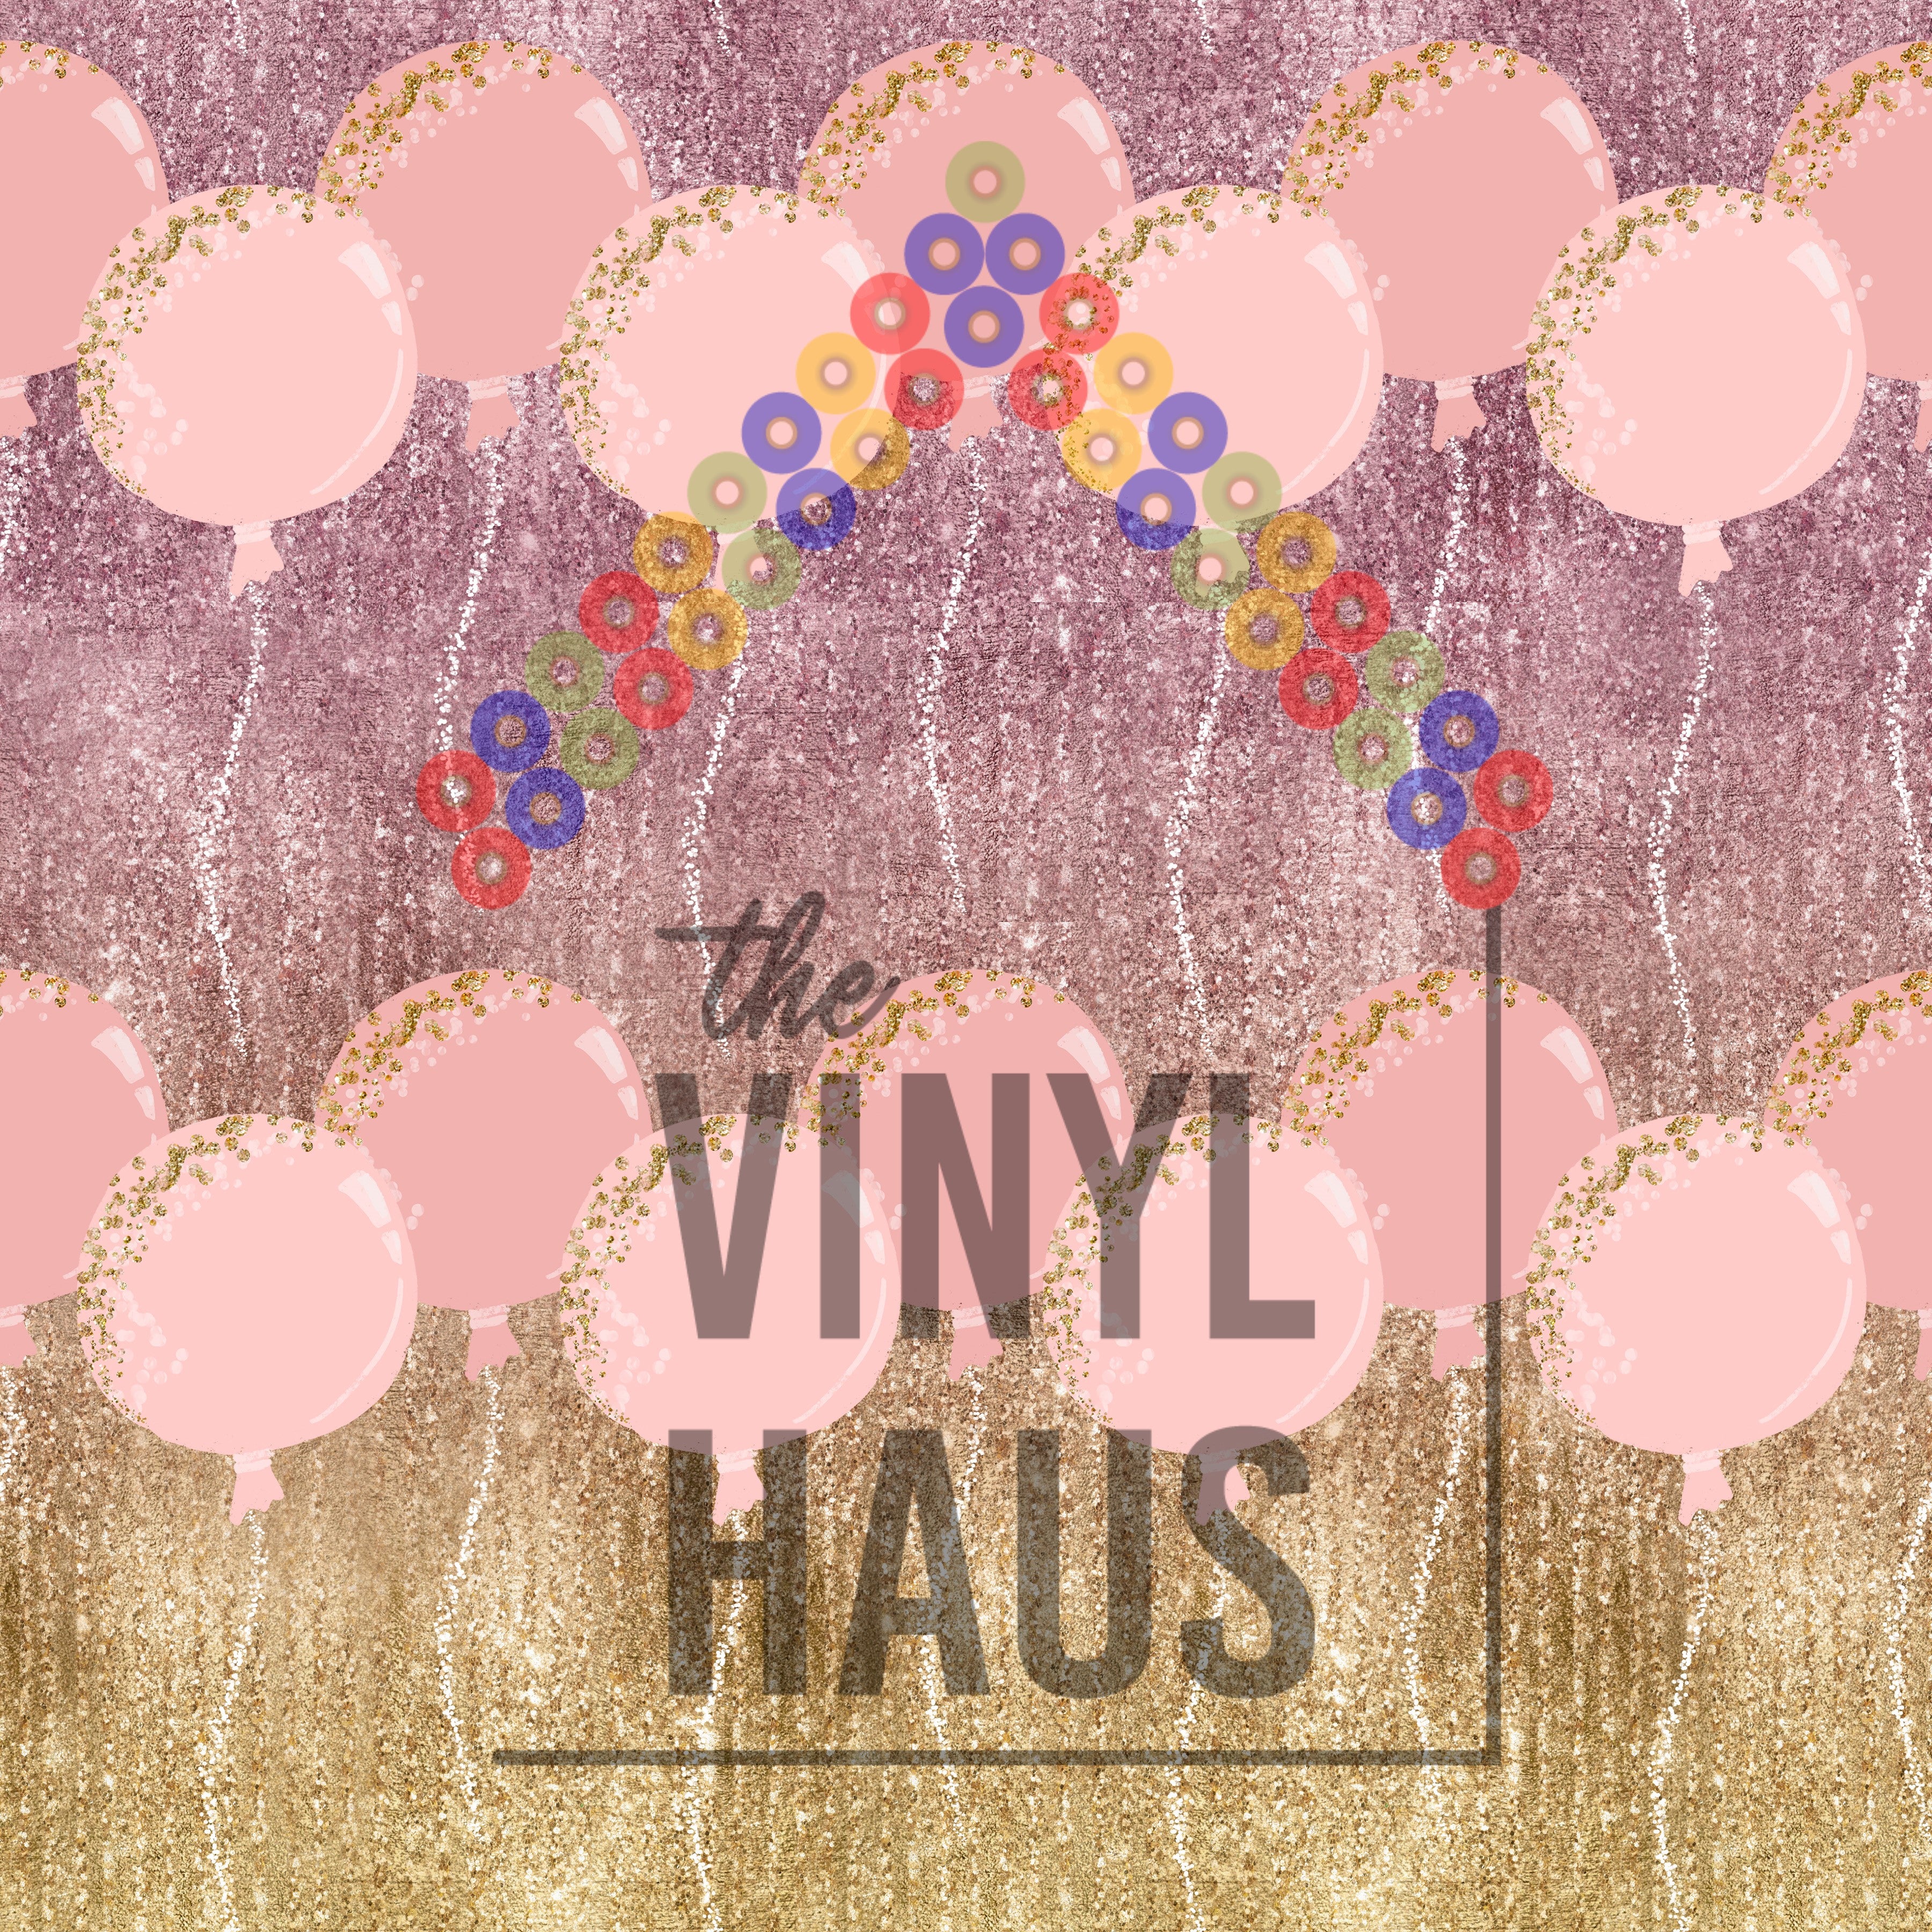 New Year's Balloon Pattern Vinyl 12" x 12" - The Vinyl Haus